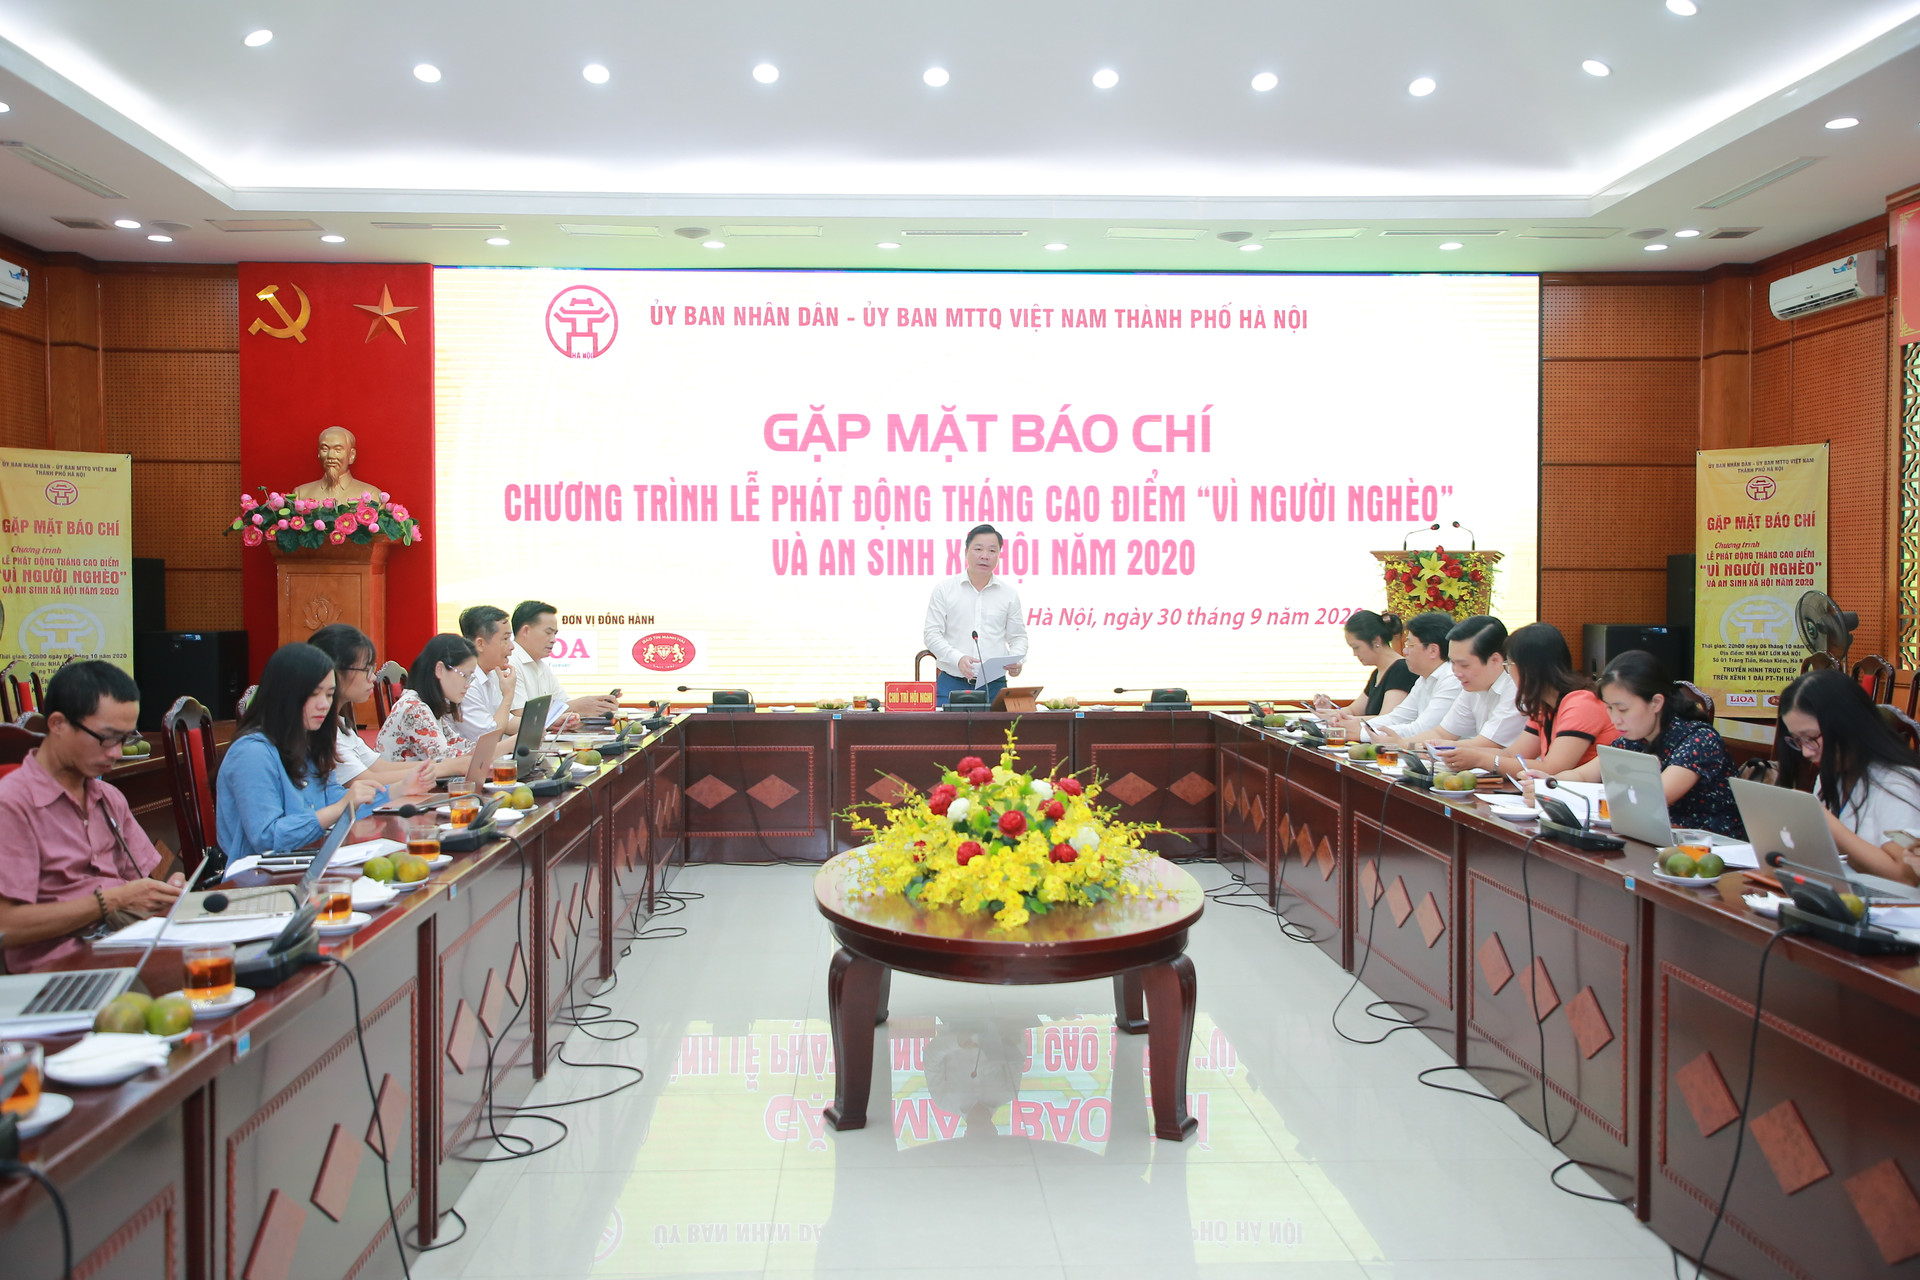 Phó Chủ tịch Nguyễn Sỹ Trường phát biểu tại buổi họp báo.